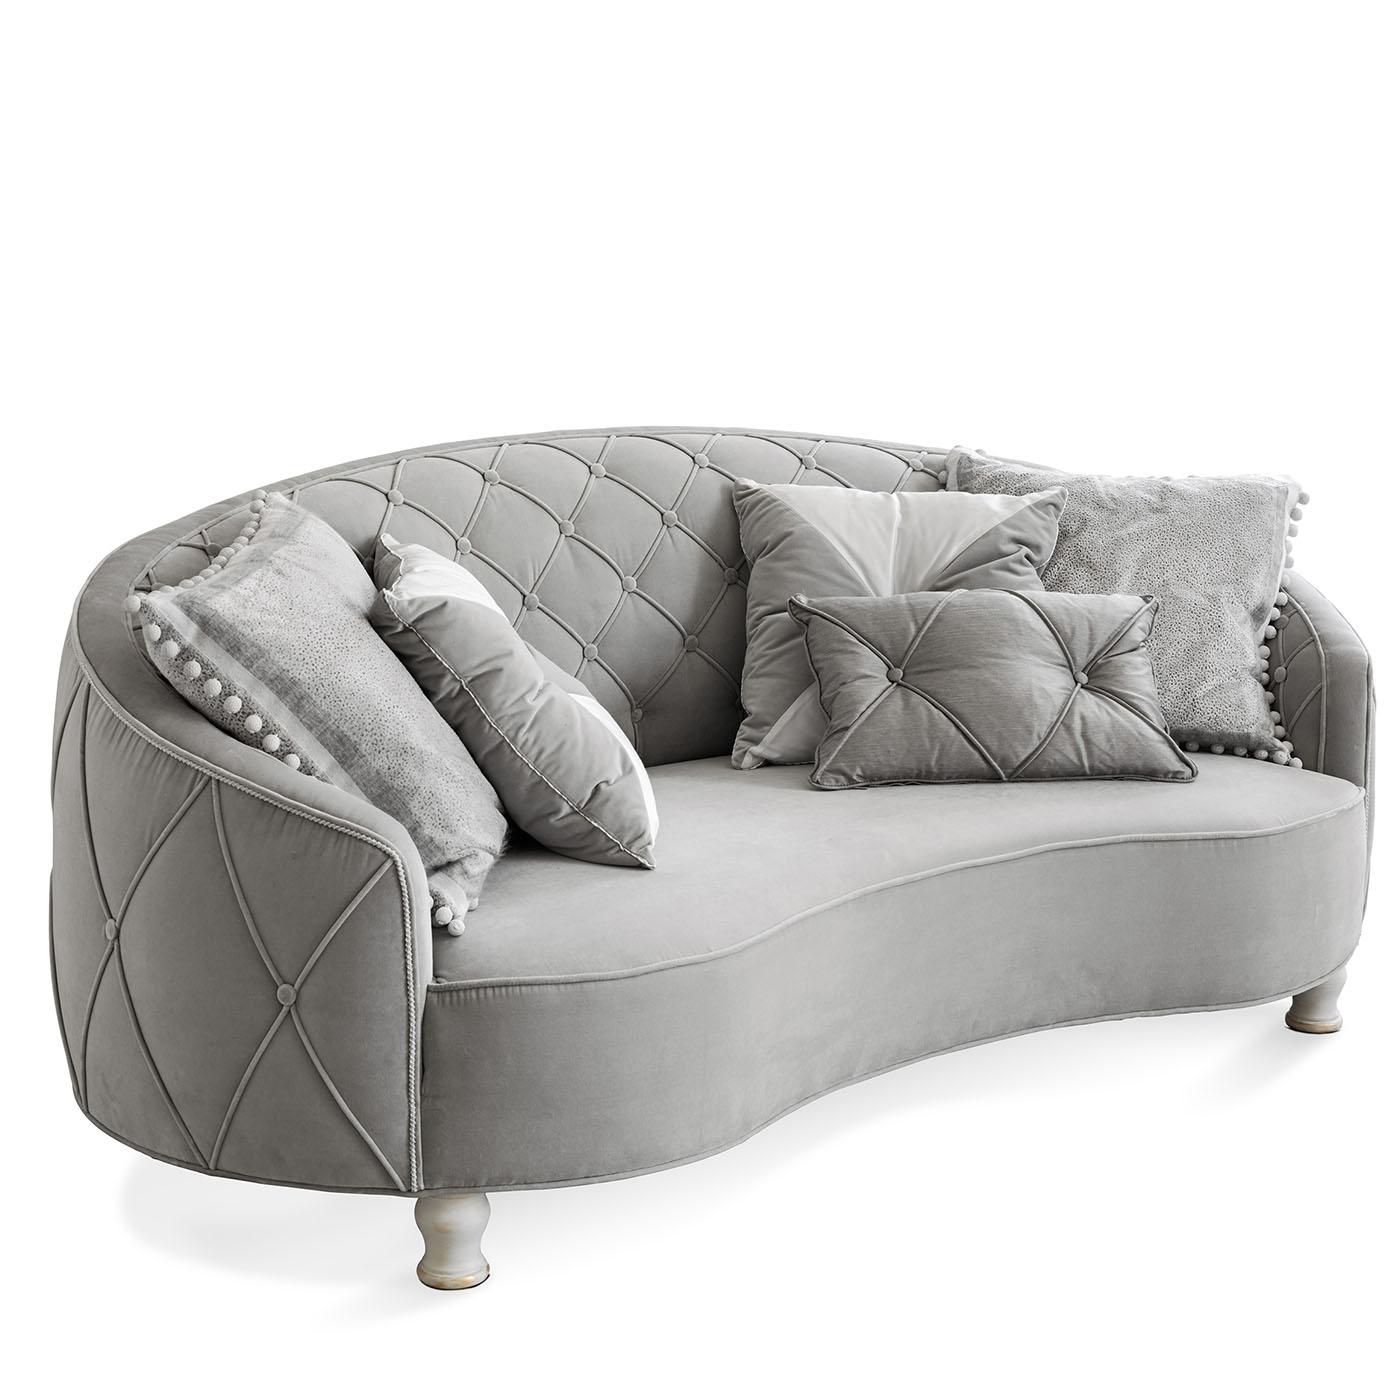 Zweisitzer-Sofa mit gestepptem Boden capitonnè, gepolstert mit Baumwollsamt, Holzfüße in weißer Ausführung. Inklusive Kissen wie auf dem Foto abgebildet.